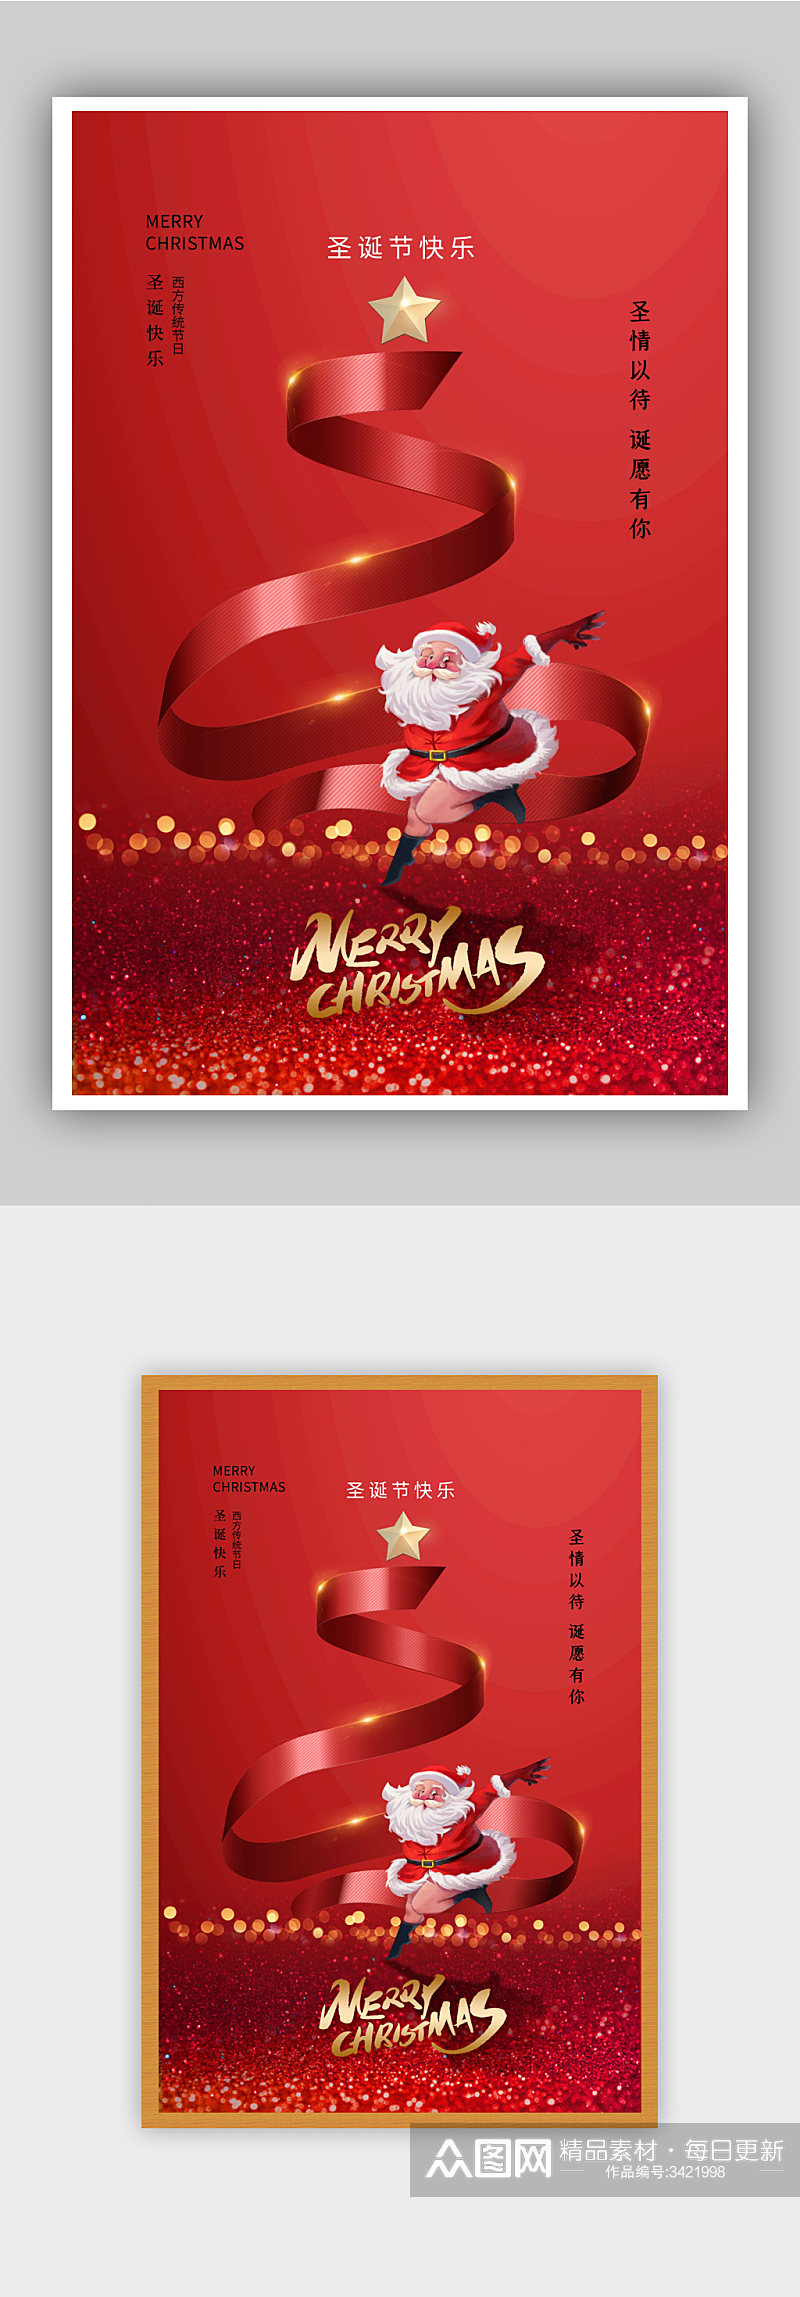 红色圣诞节快乐海报素材